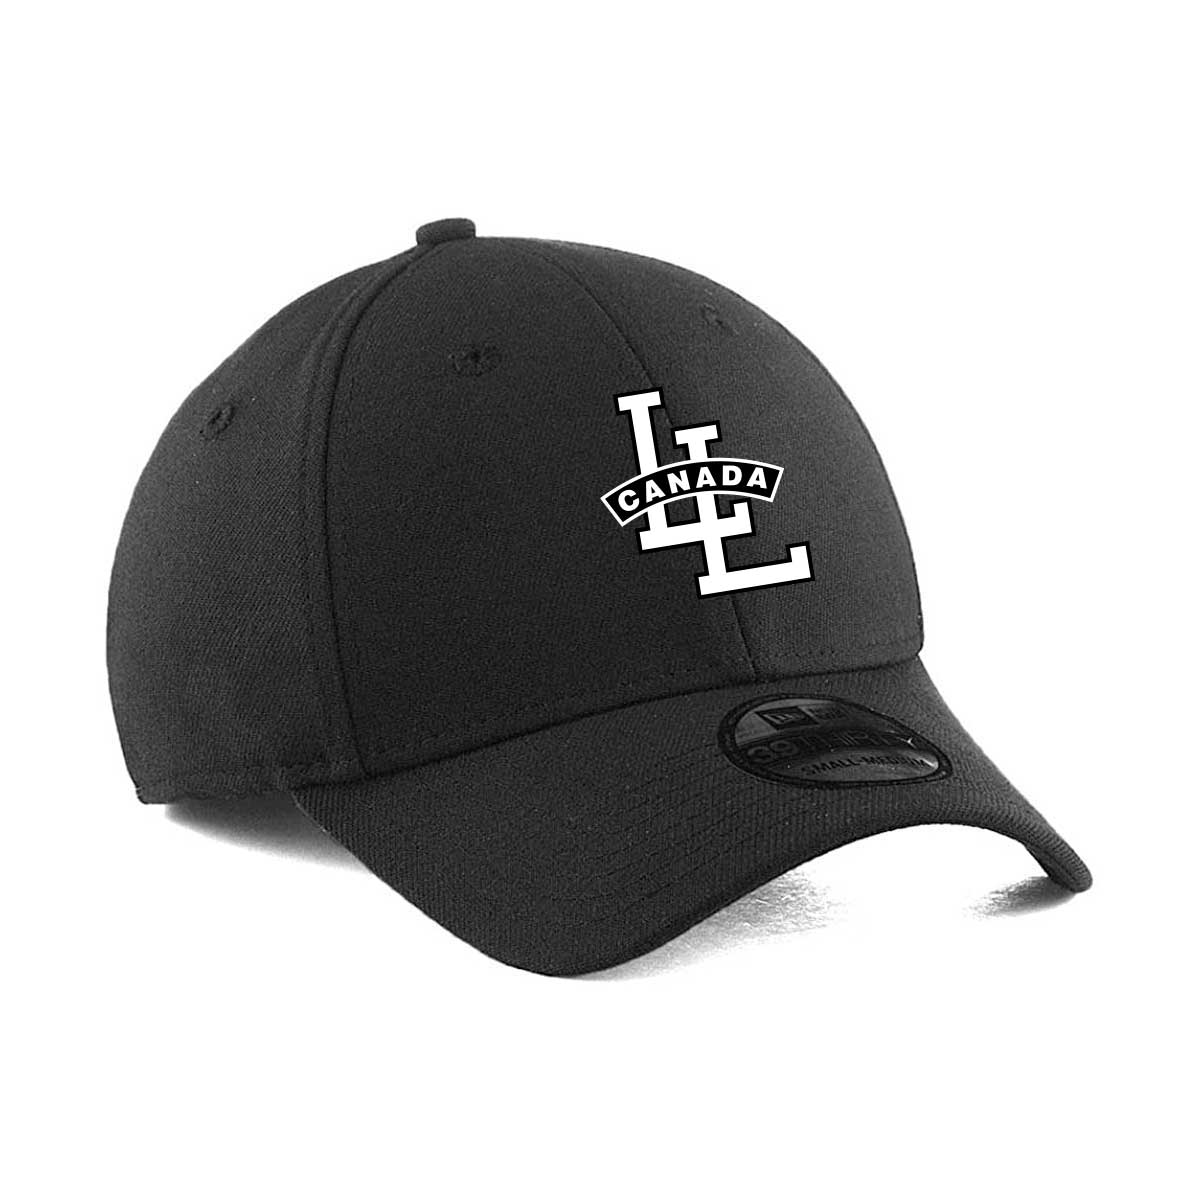 New Era Little League Canada Long Peak Umpire Hat